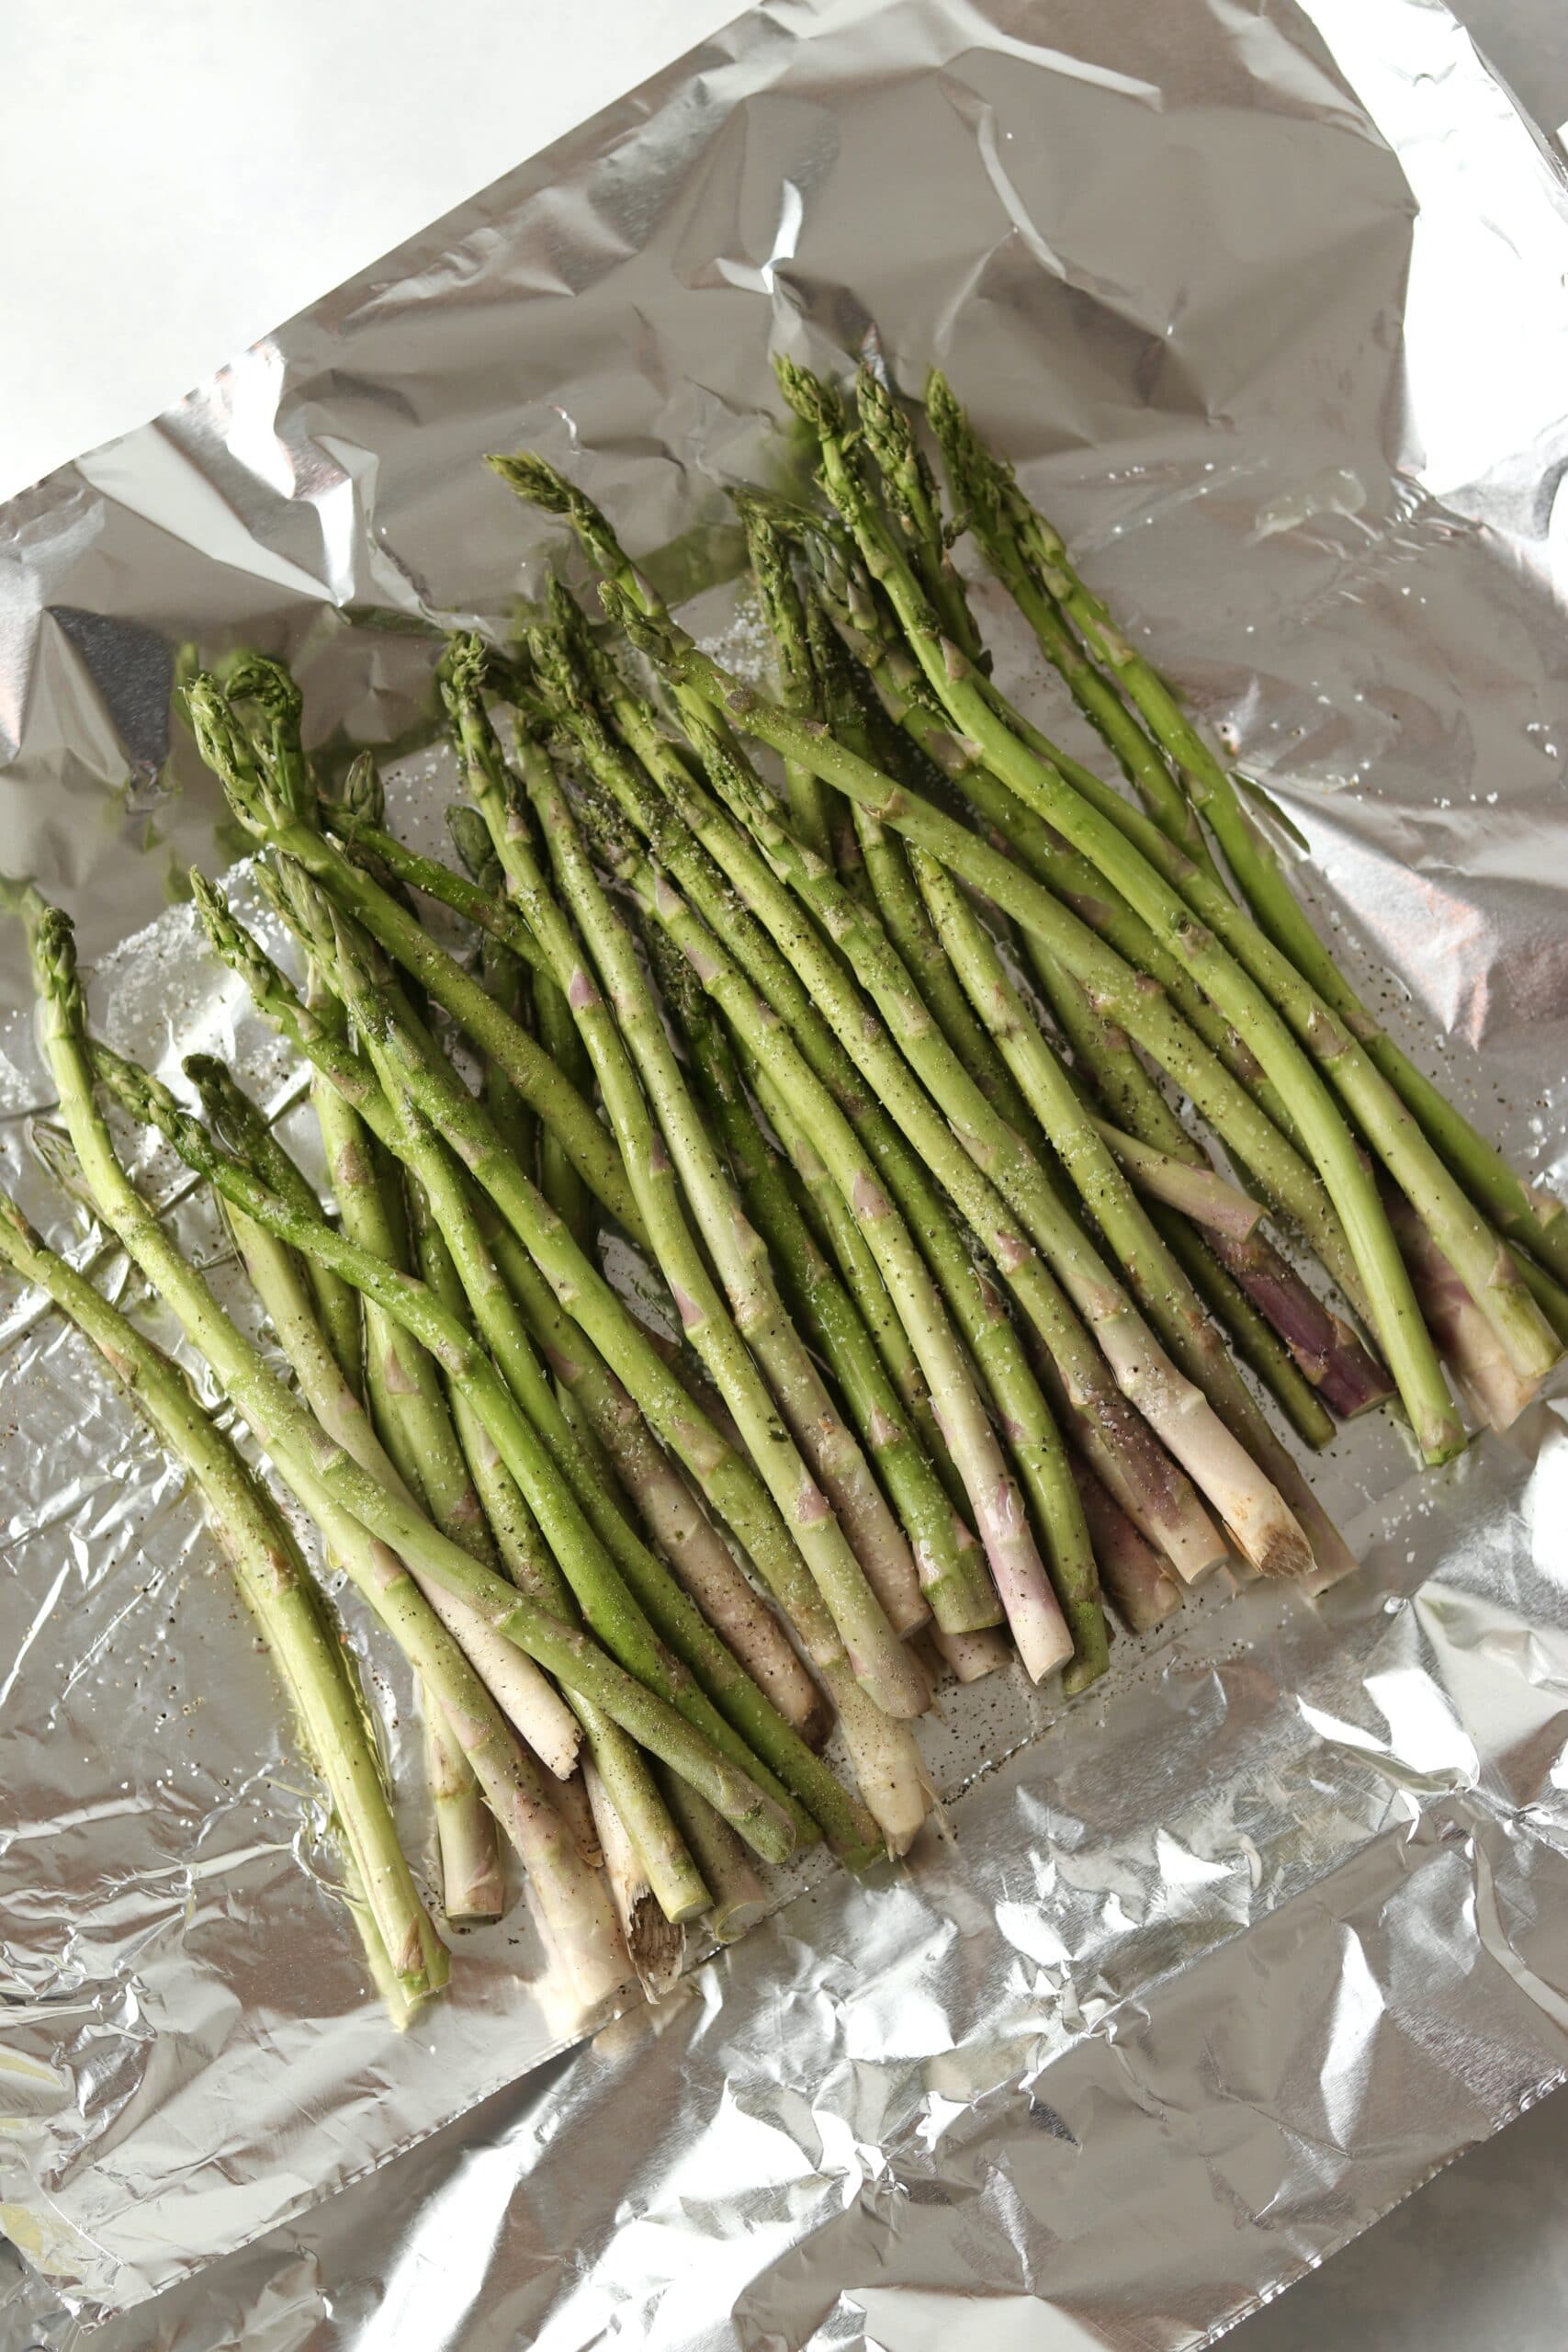 raw asparagus on foil